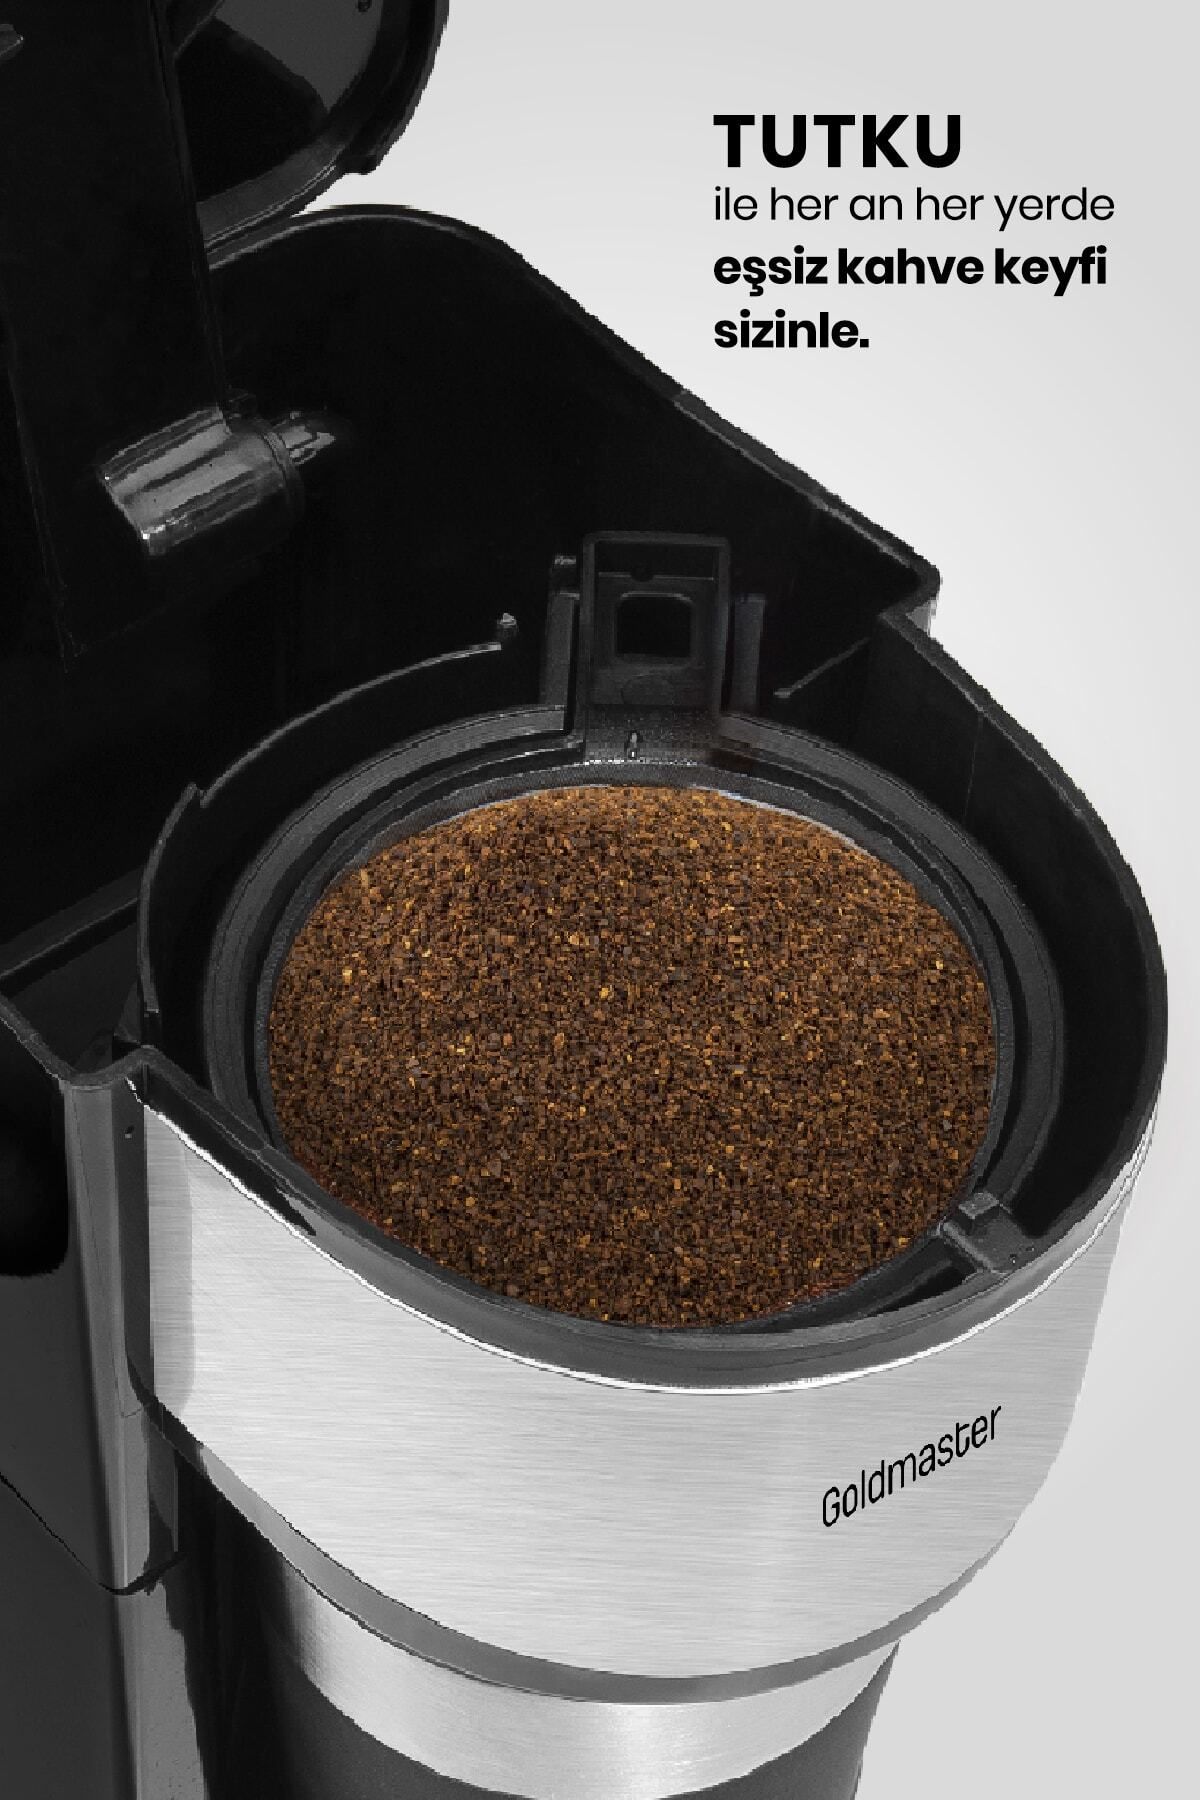 GoldMaster Tutku Seyahat Termos Bardaklı Bpa Içermeyen Kişisel Filtre Kahve Makinesi Gm7351